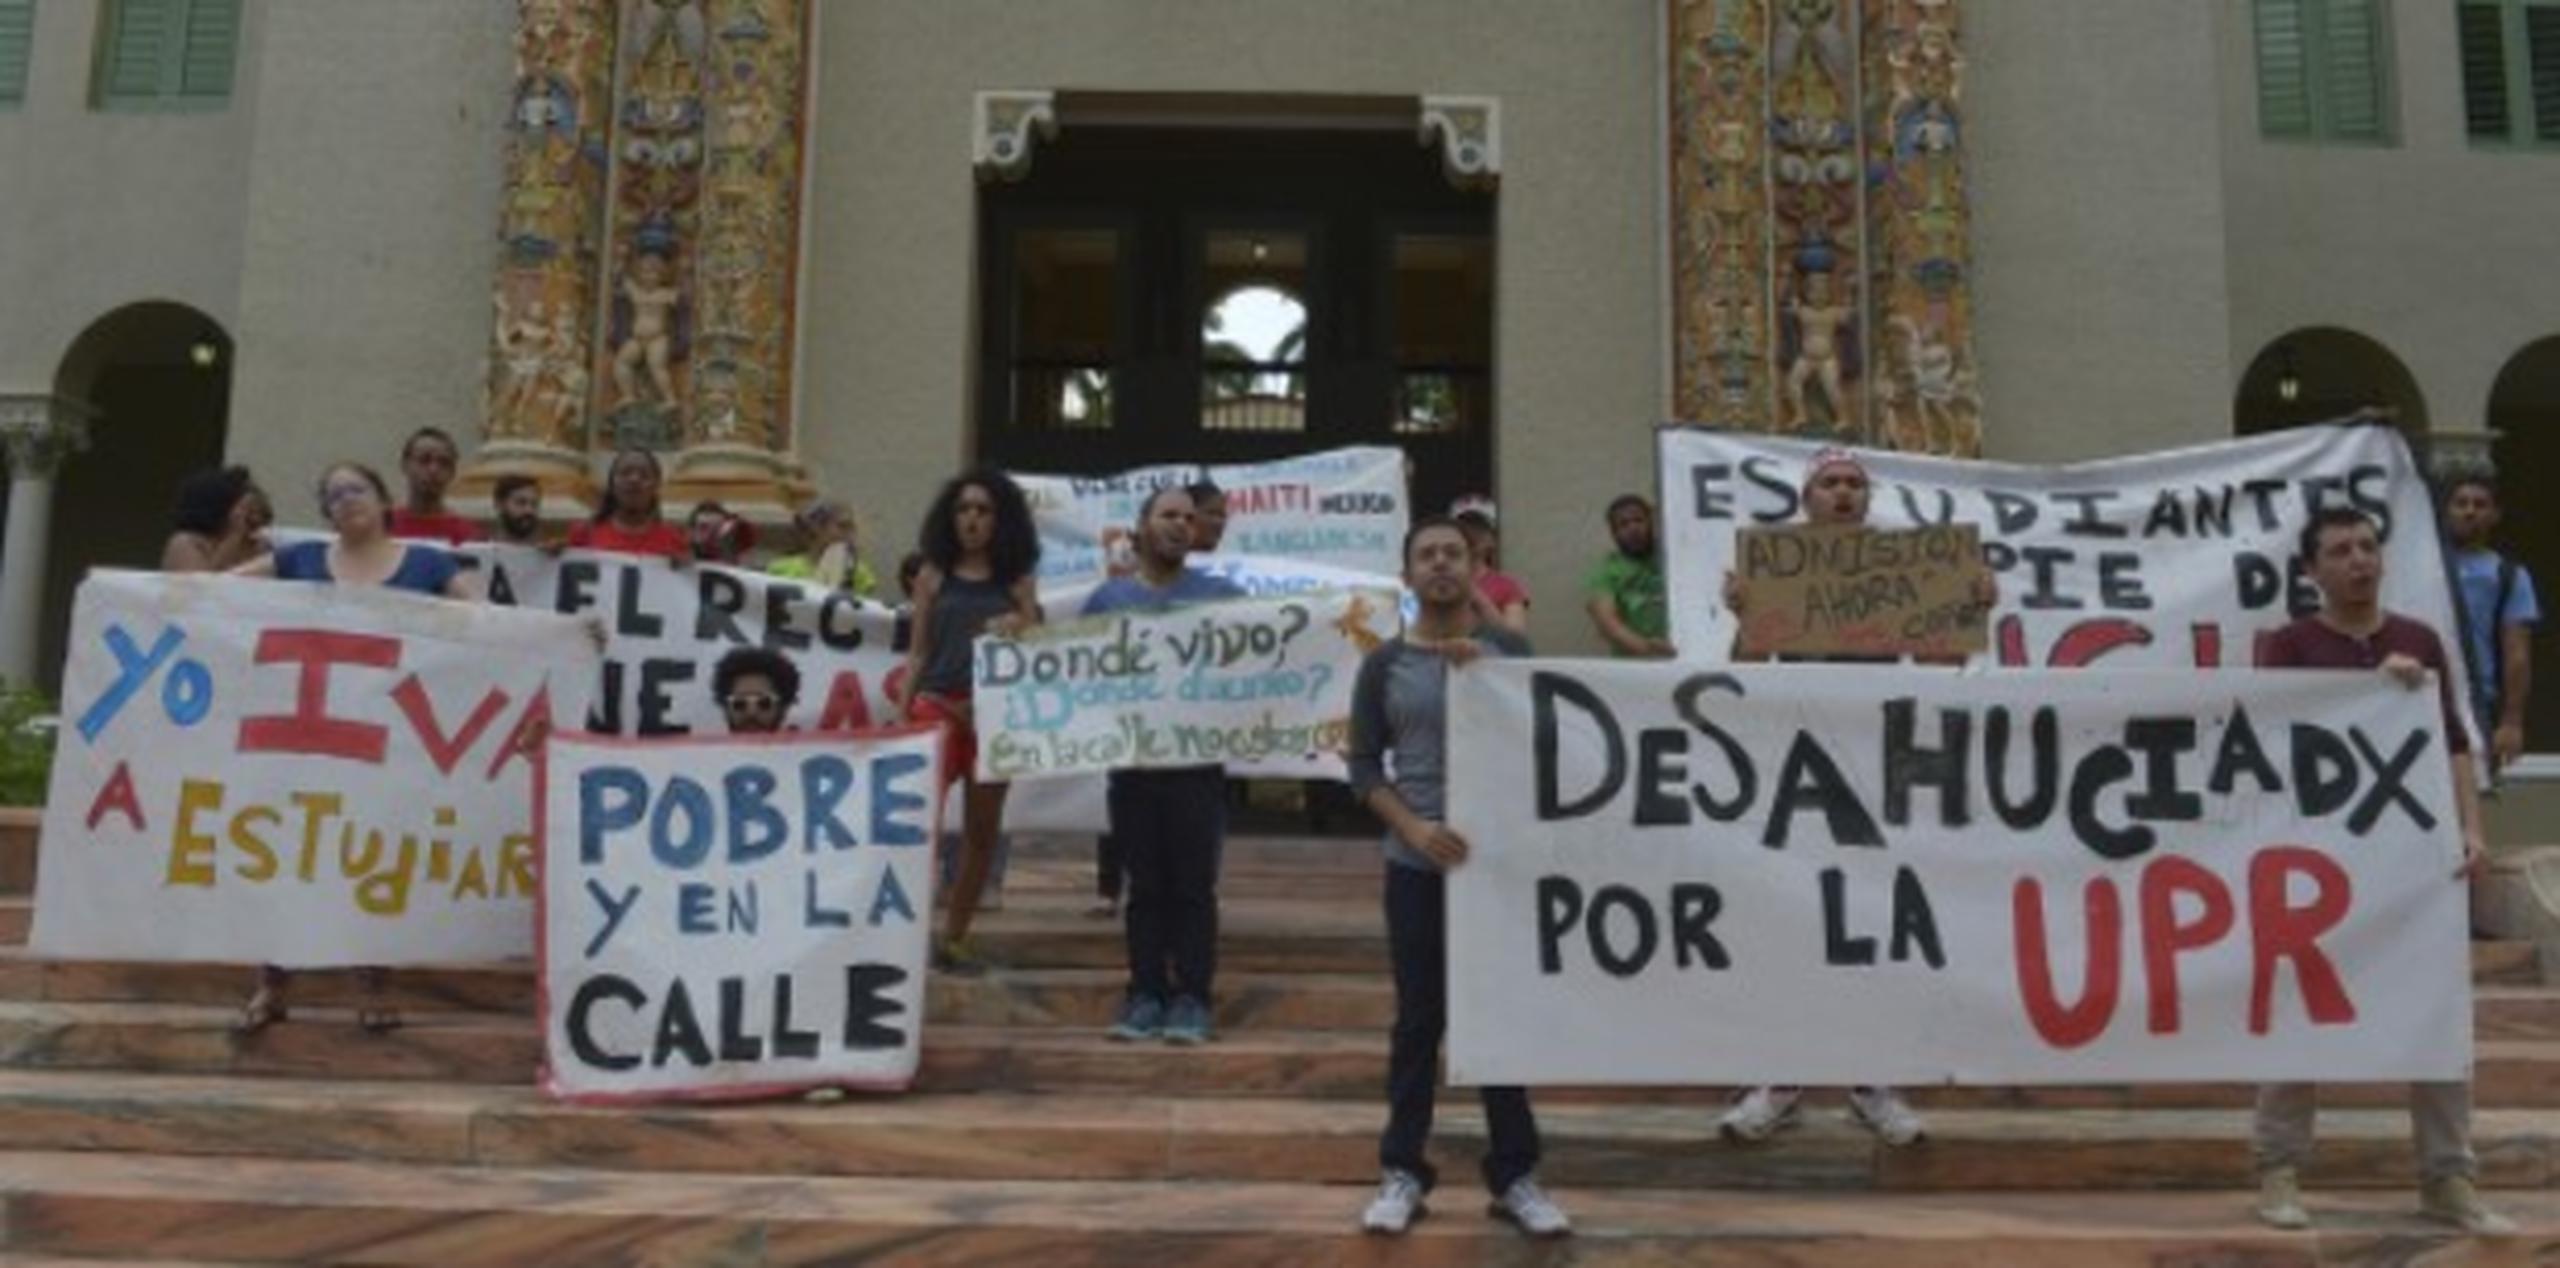 Los universitarios, aquí en una protesta relacionada celebrada la semana pasada, dicen que el rector Carlos Severino ofreció soluciones que aún no han sido viabilizadas. (Archivo)